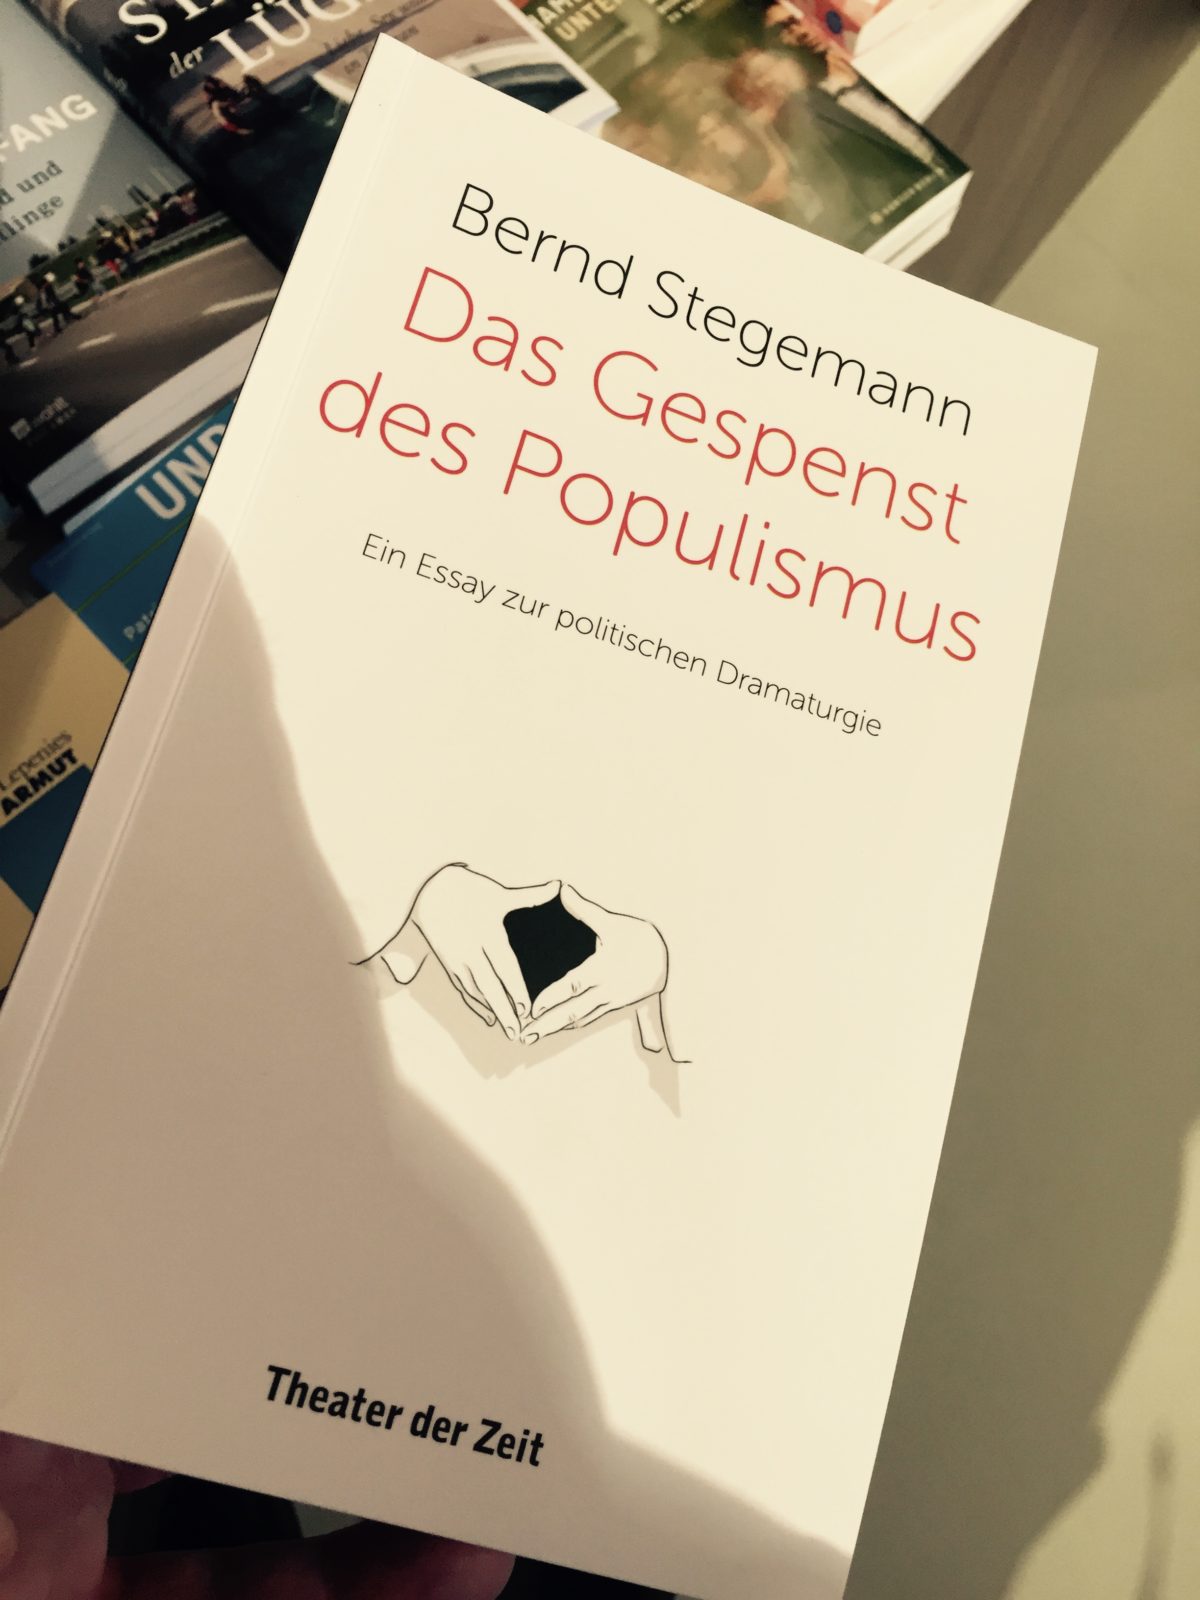 Bernd Stegemann Das Gespenst des Populismus